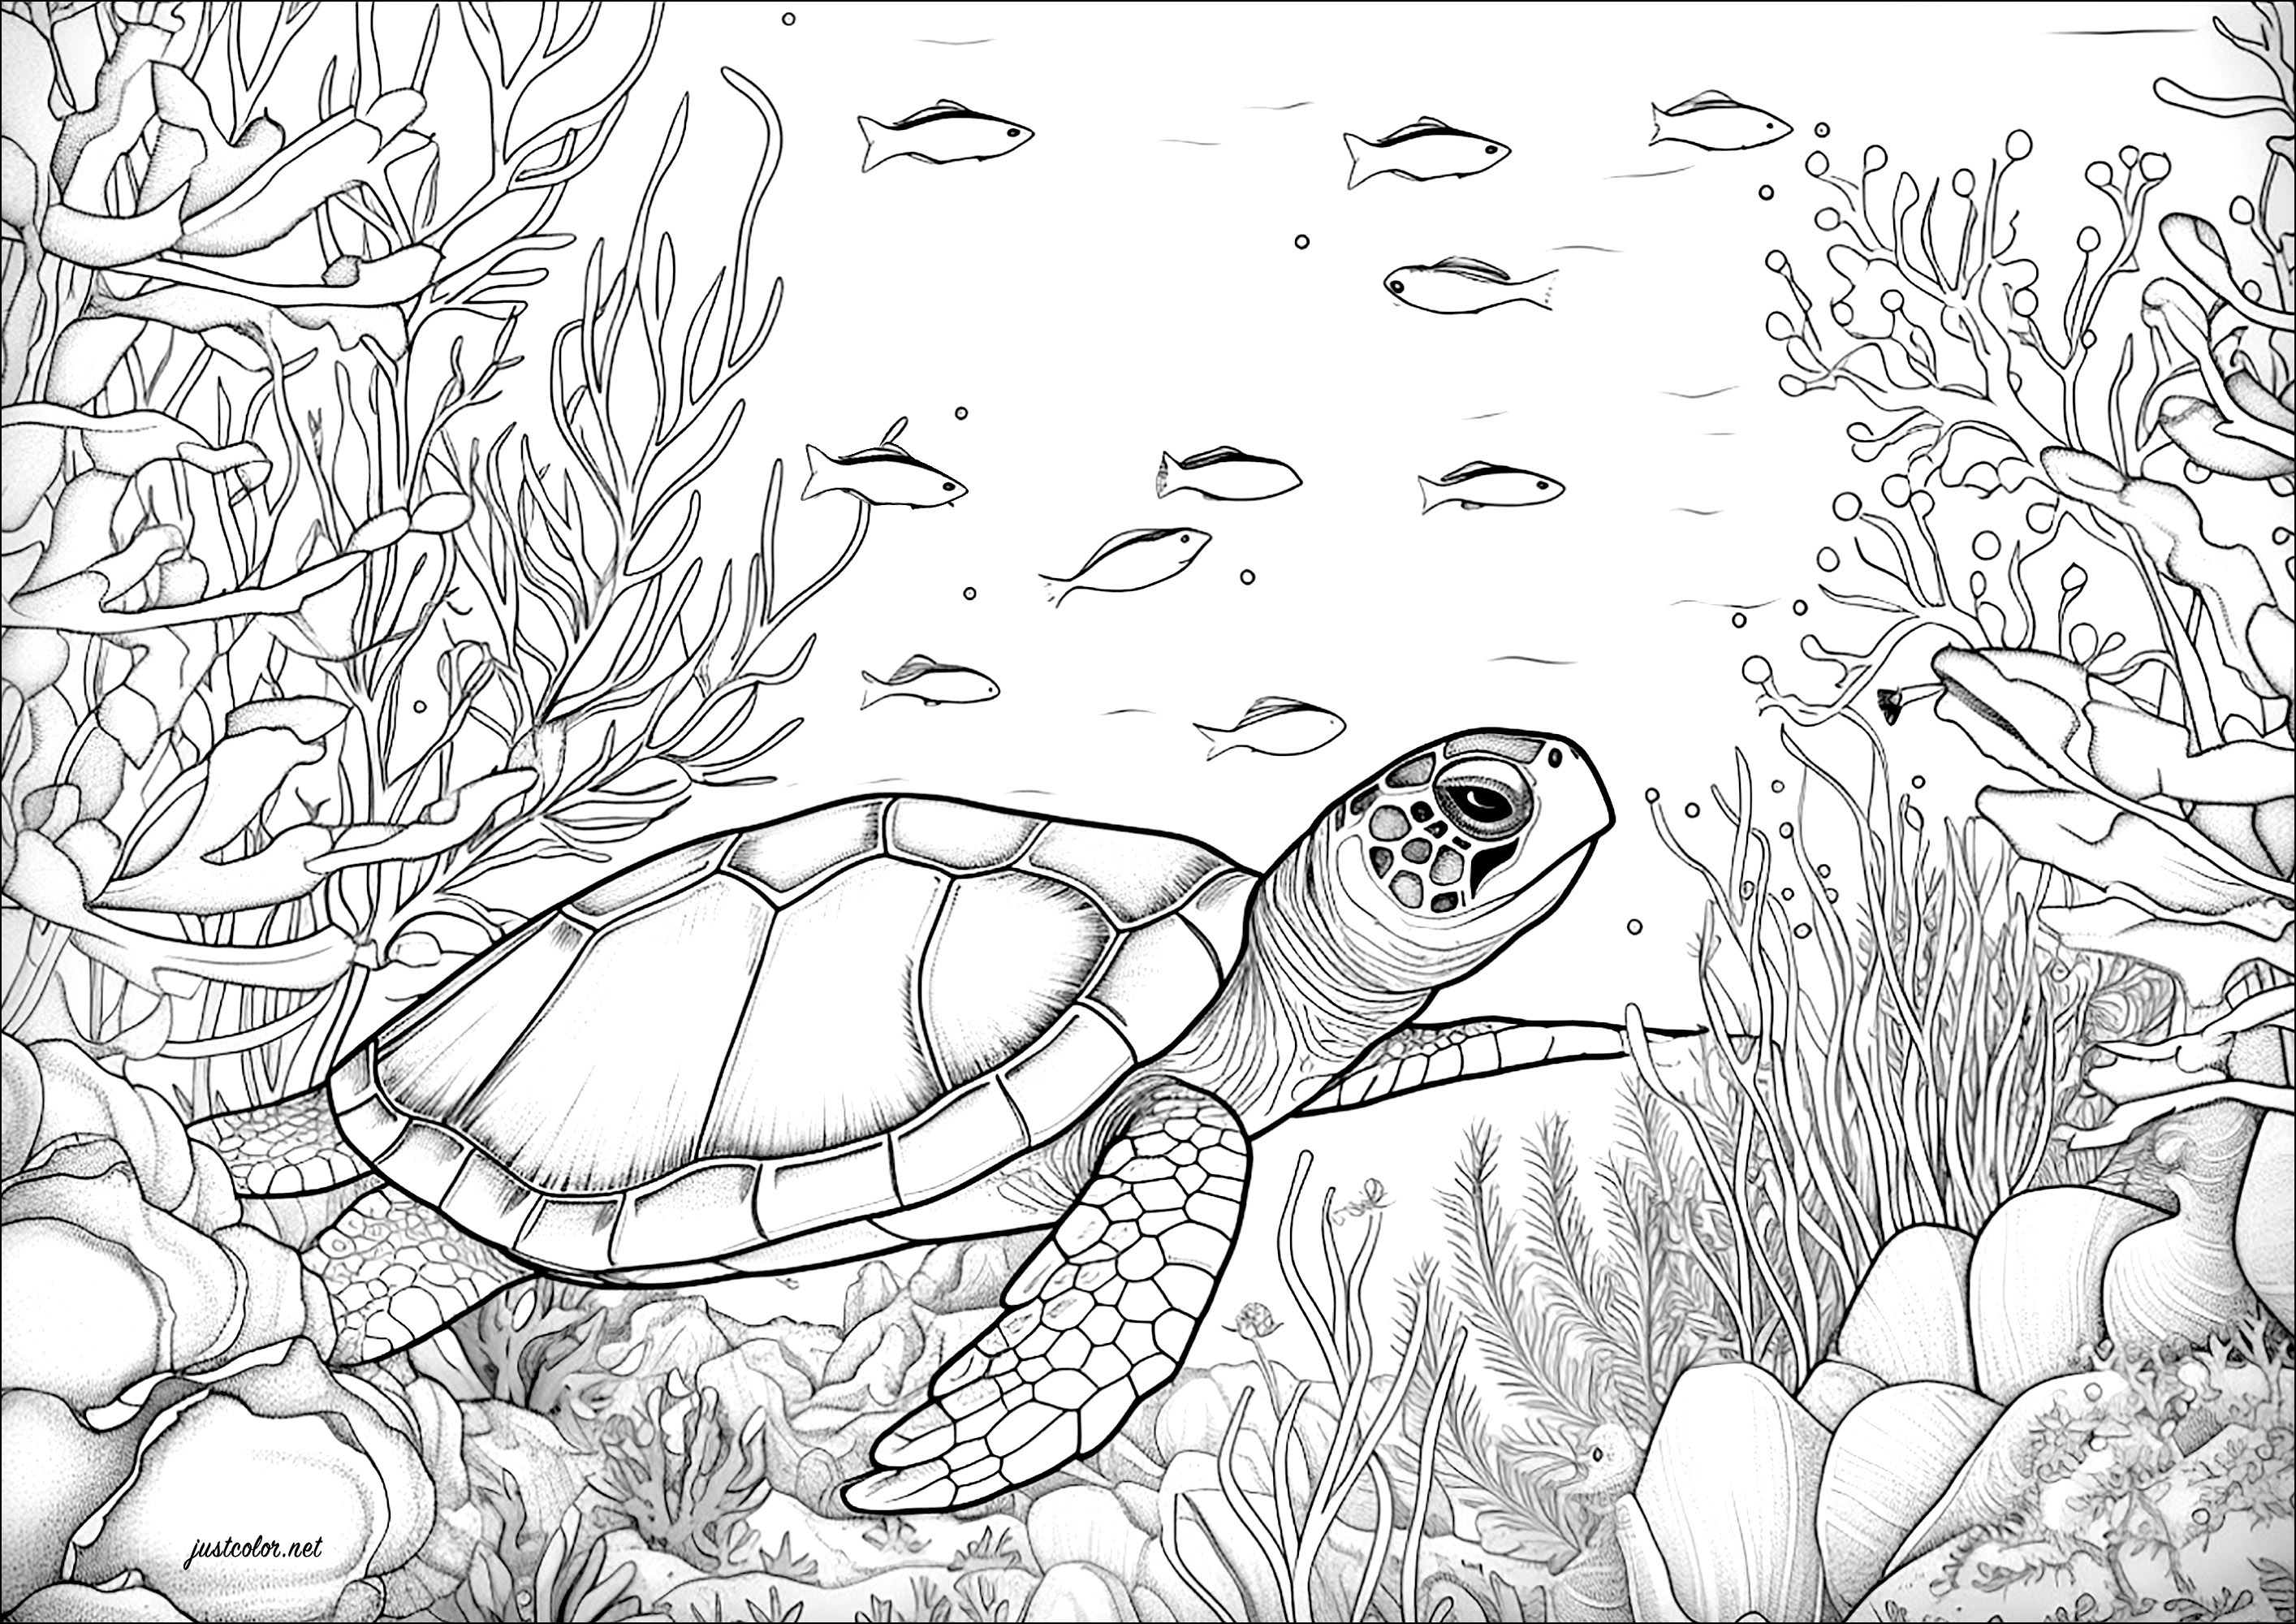 Tartaruga che nuota con i pesci. Tanti dettagli da colorare con i coralli e le alghe.